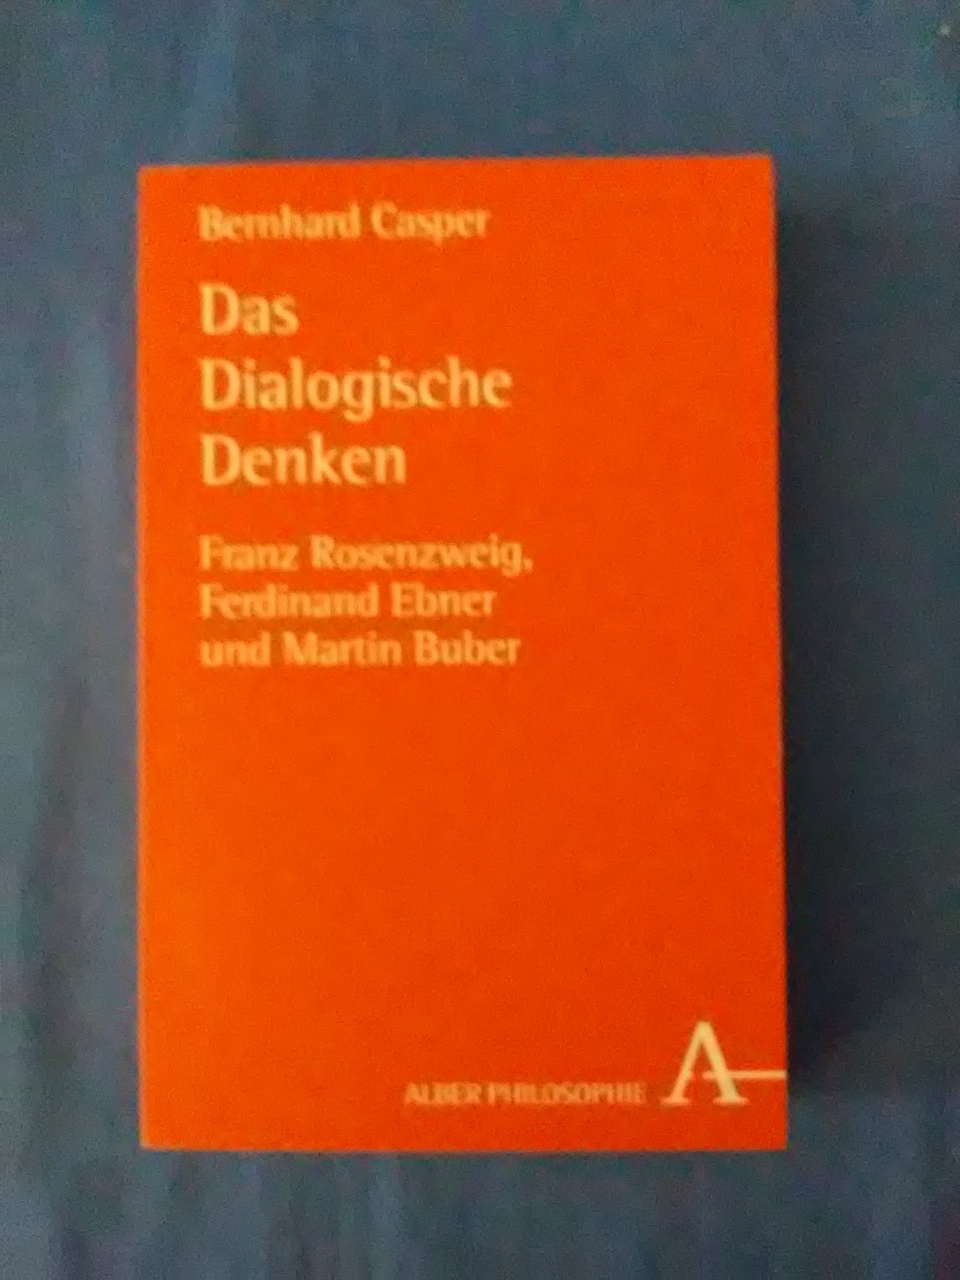 Die dialogische Denken : Franz Rosenzweig, Ferdinand Ebner und Martin Buber. Alber-Reihe Philosophie. - Casper, Bernhard.